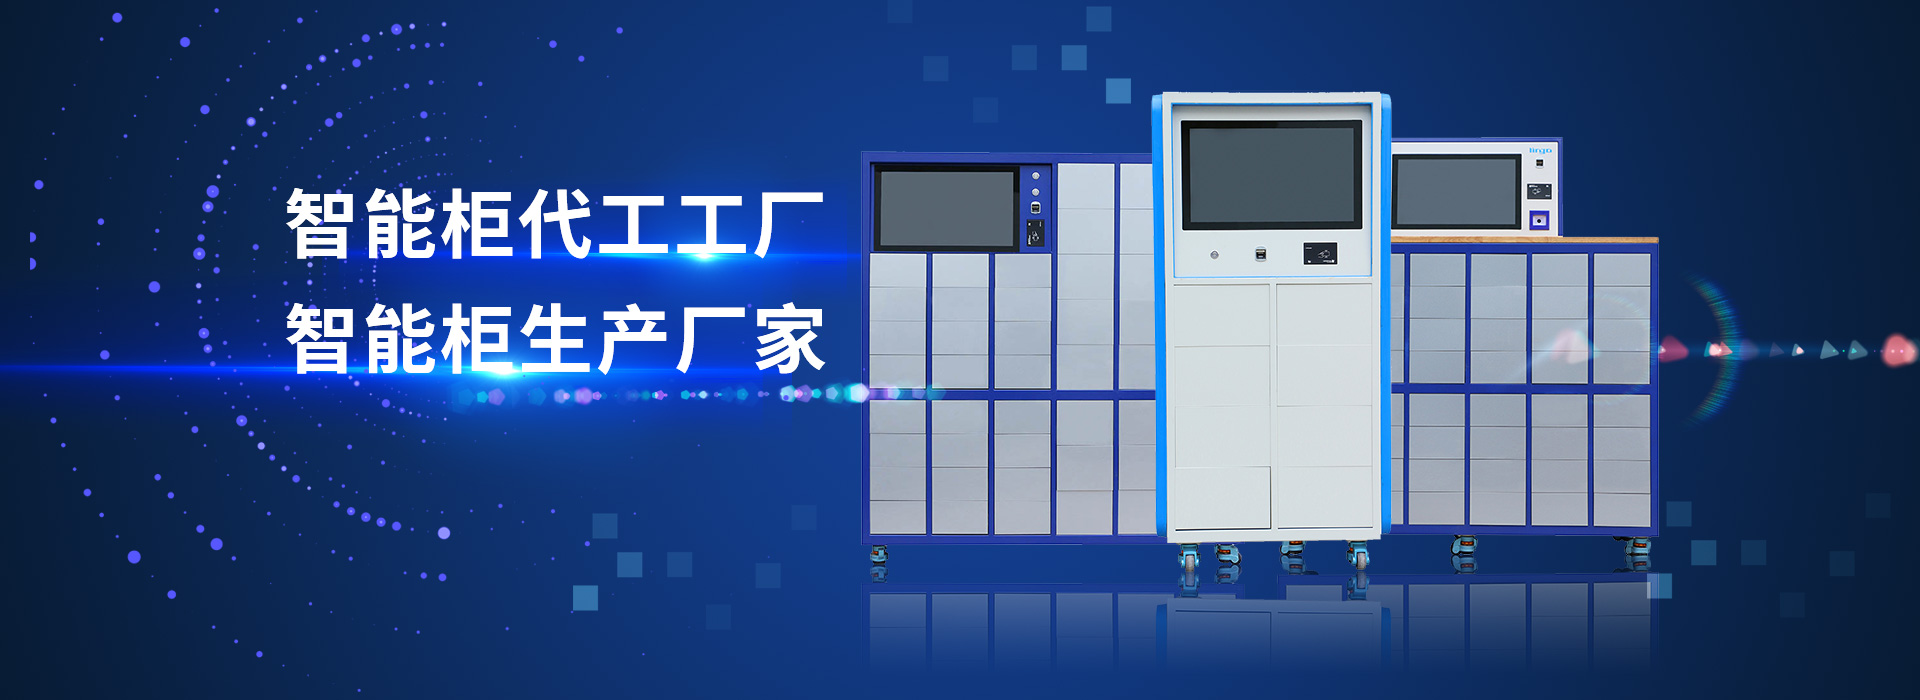 山东凤凰快3官网智能主营智能工具柜,智能光敏柜,智能影像柜等系列产品.